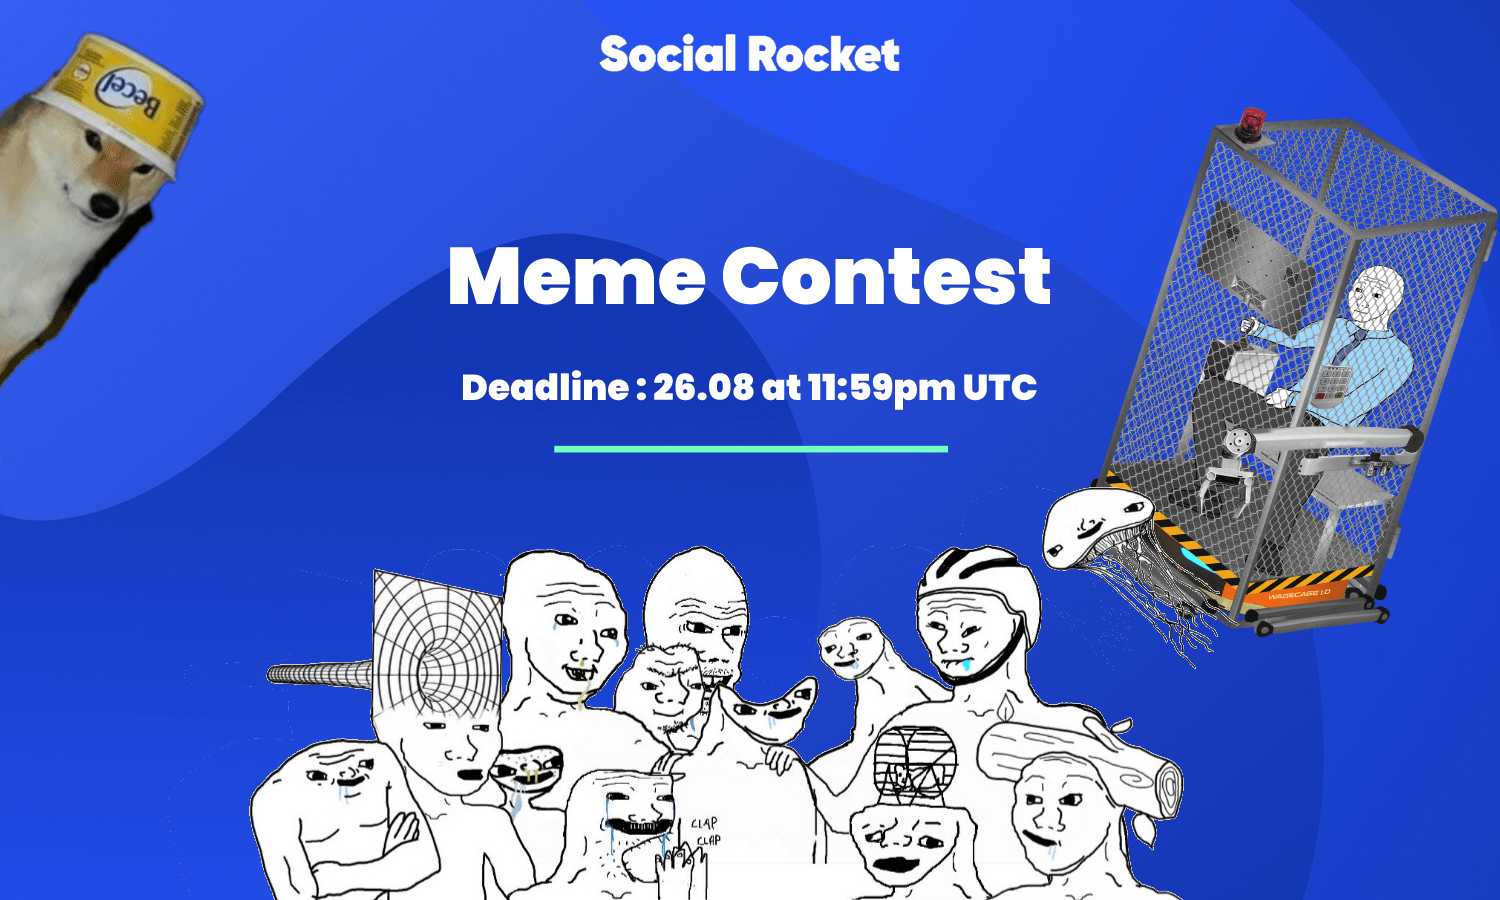 meme-contest-min.png